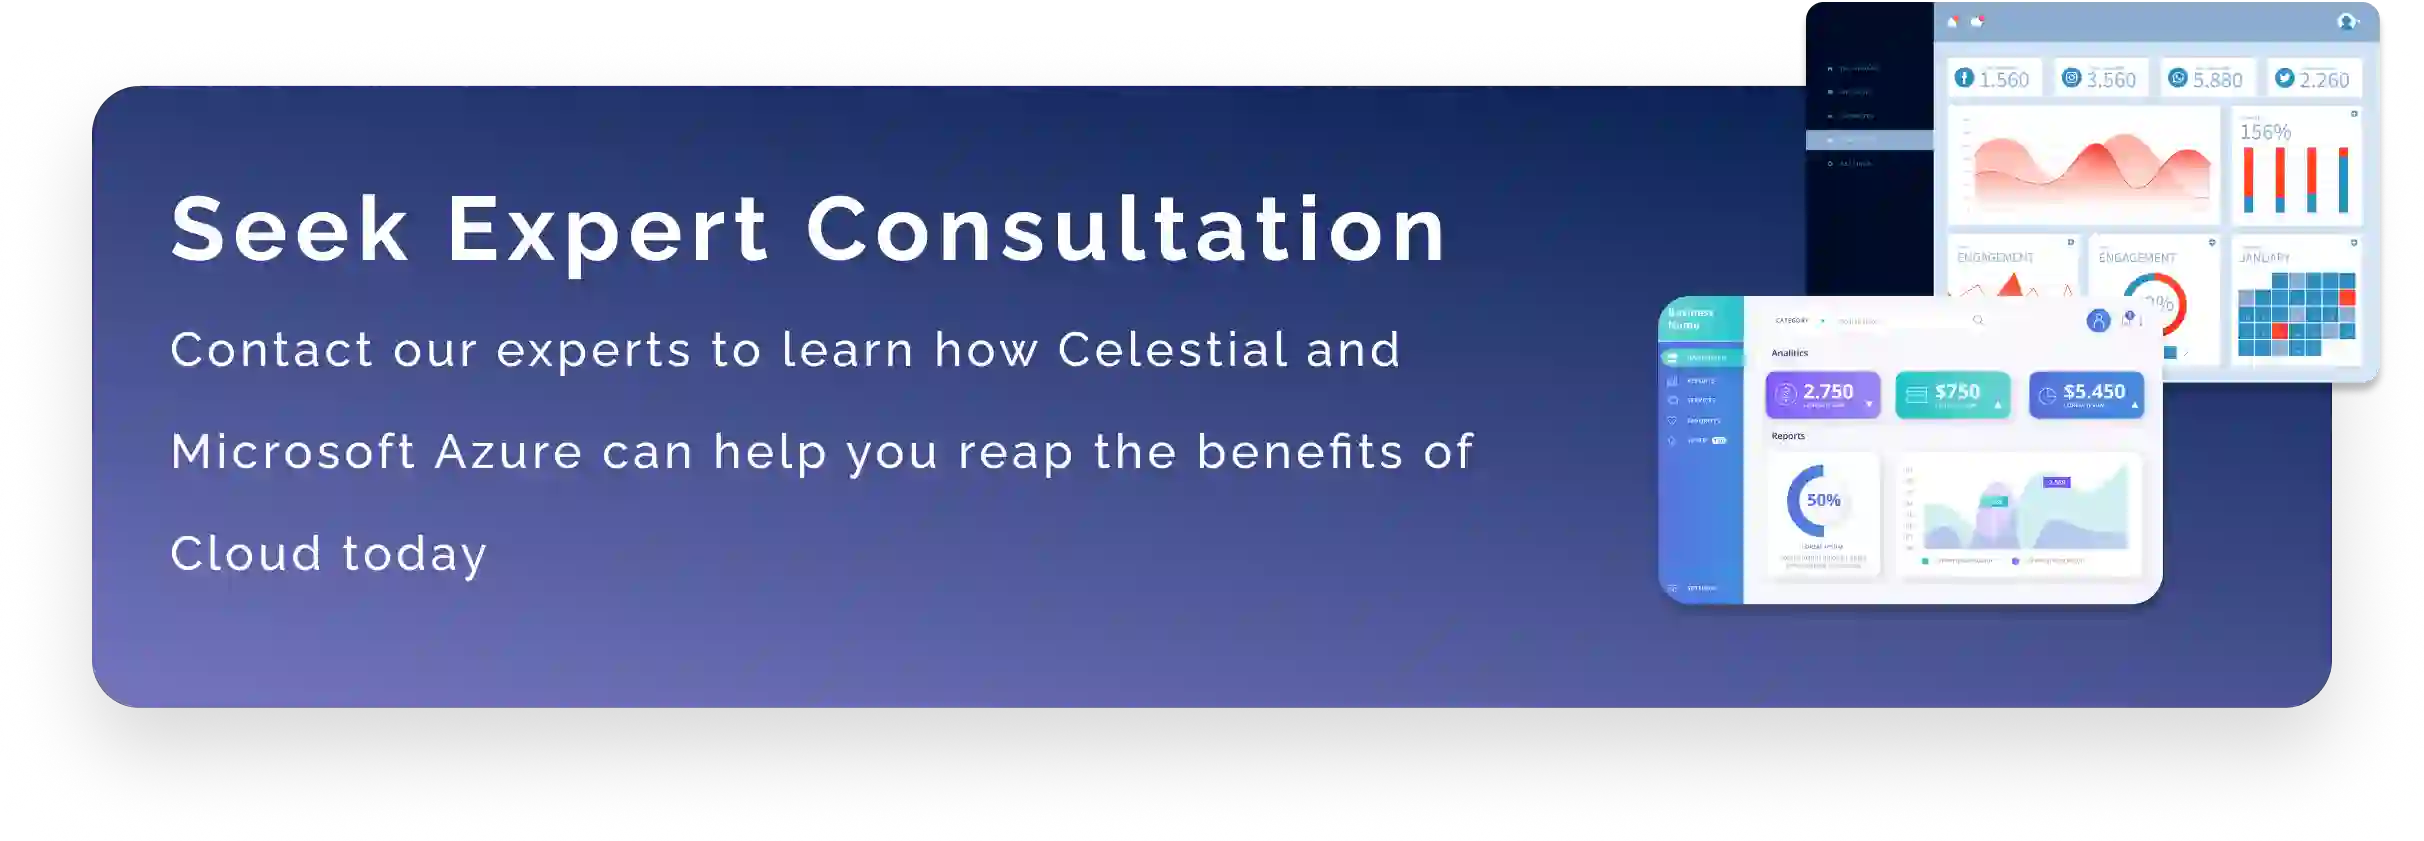 Celestial expert Consultation